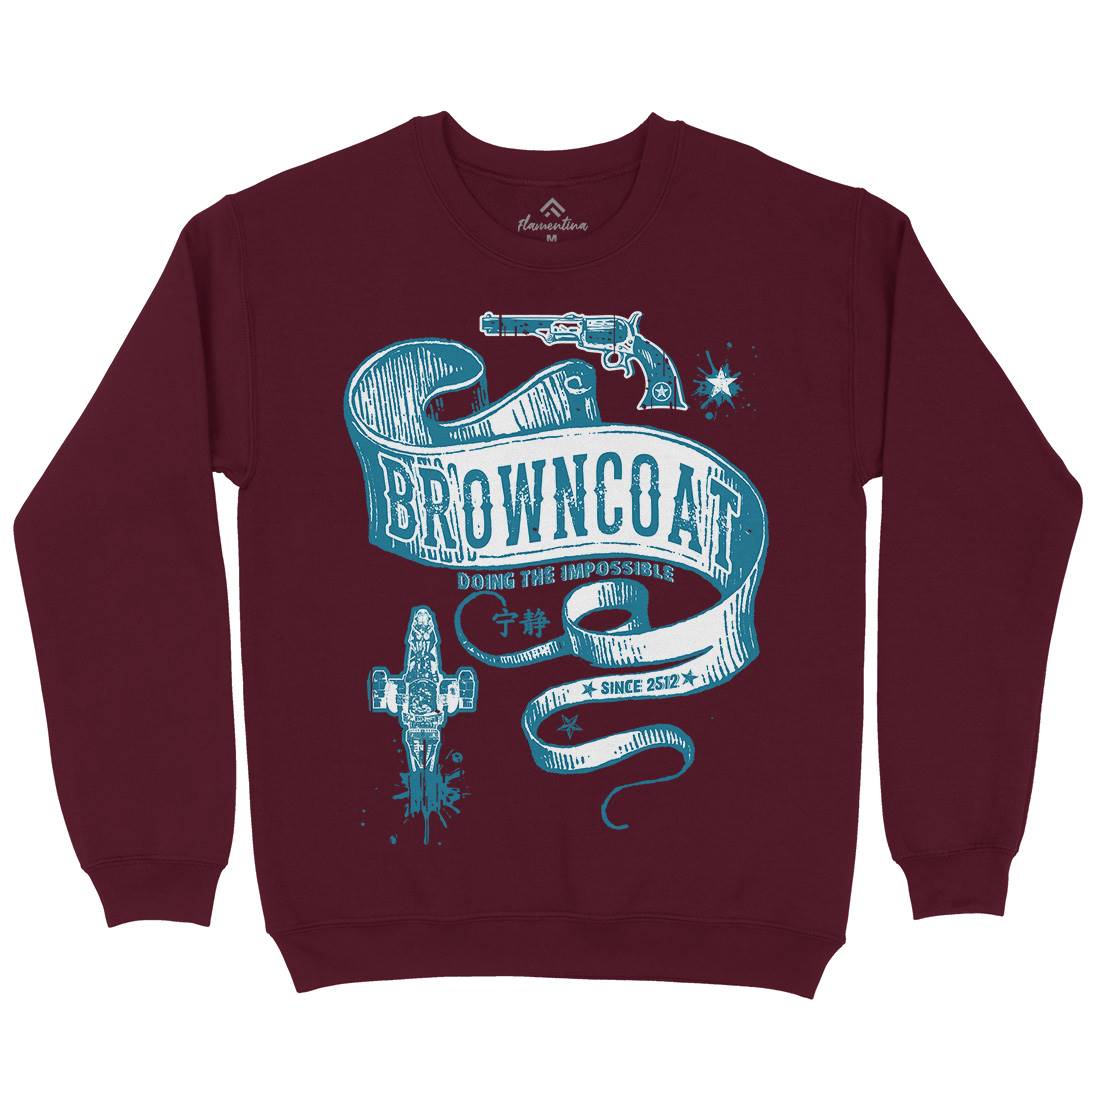 Browncoat Kids Crew Neck Sweatshirt Space D283